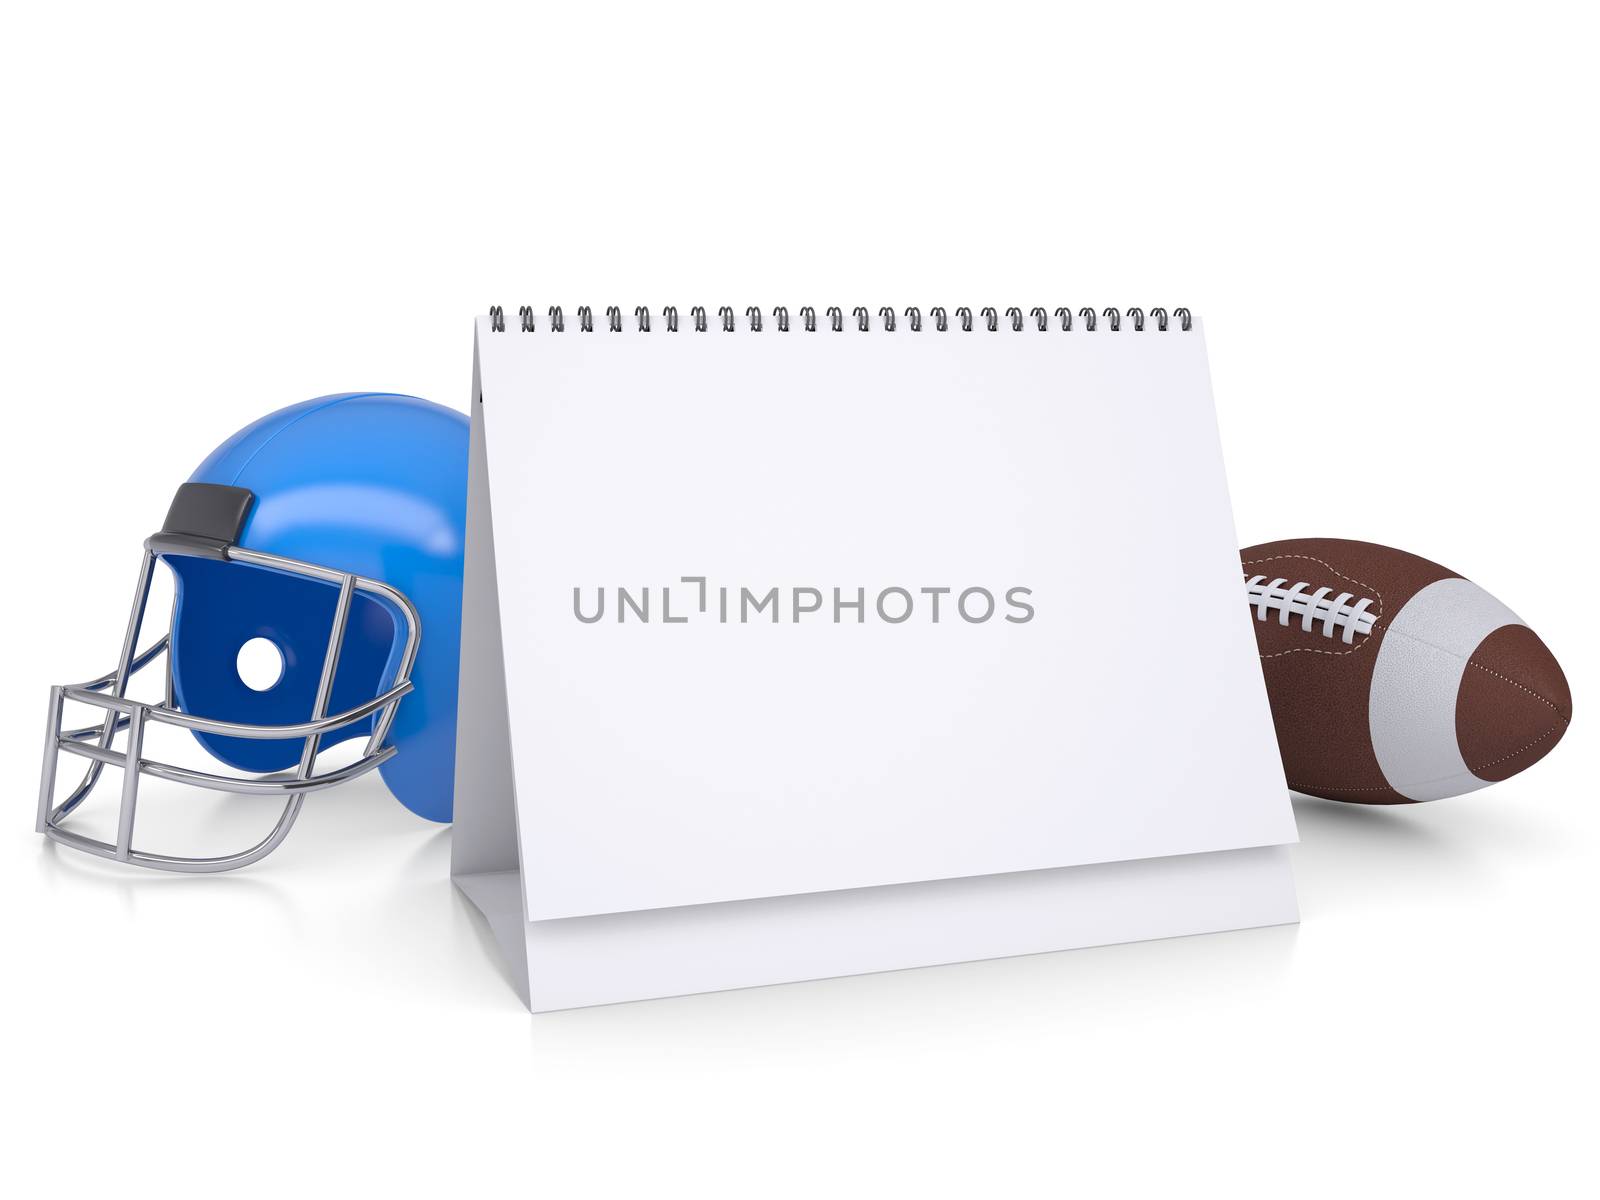 Desktop calendar, a football helmet and ball by cherezoff